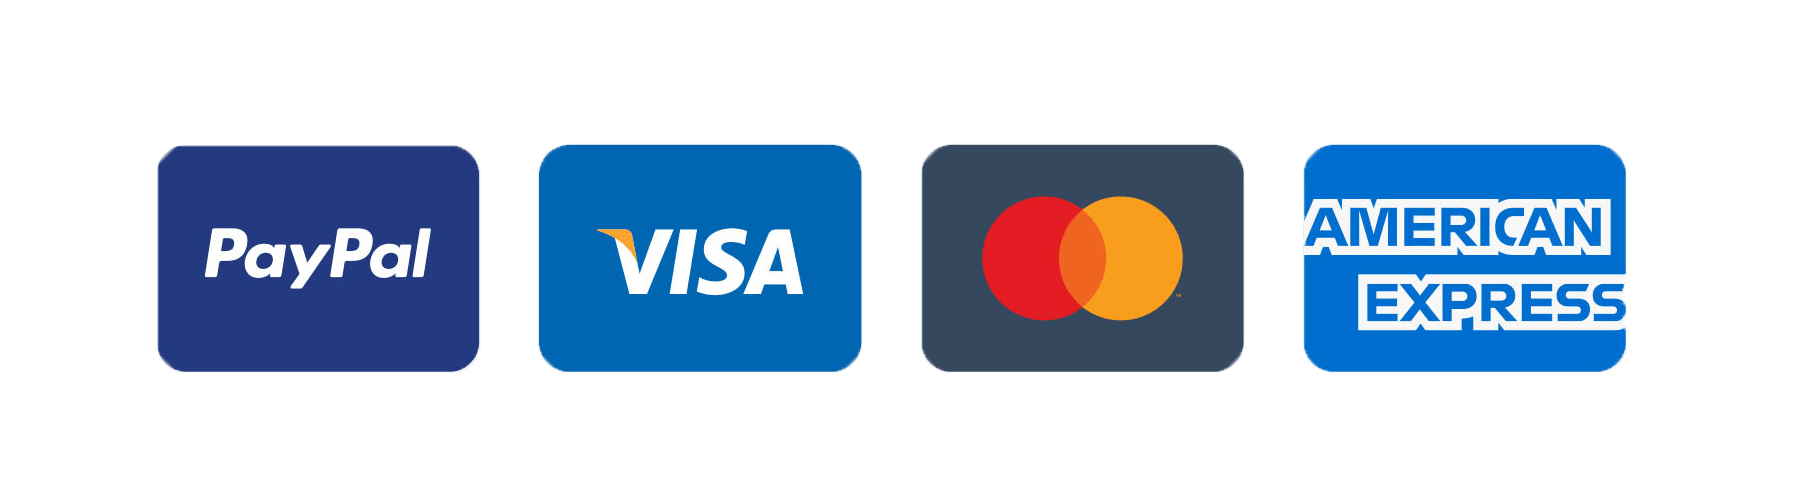 Paypal, Visa, Mastercard, American Express, ebay, Amazon, google